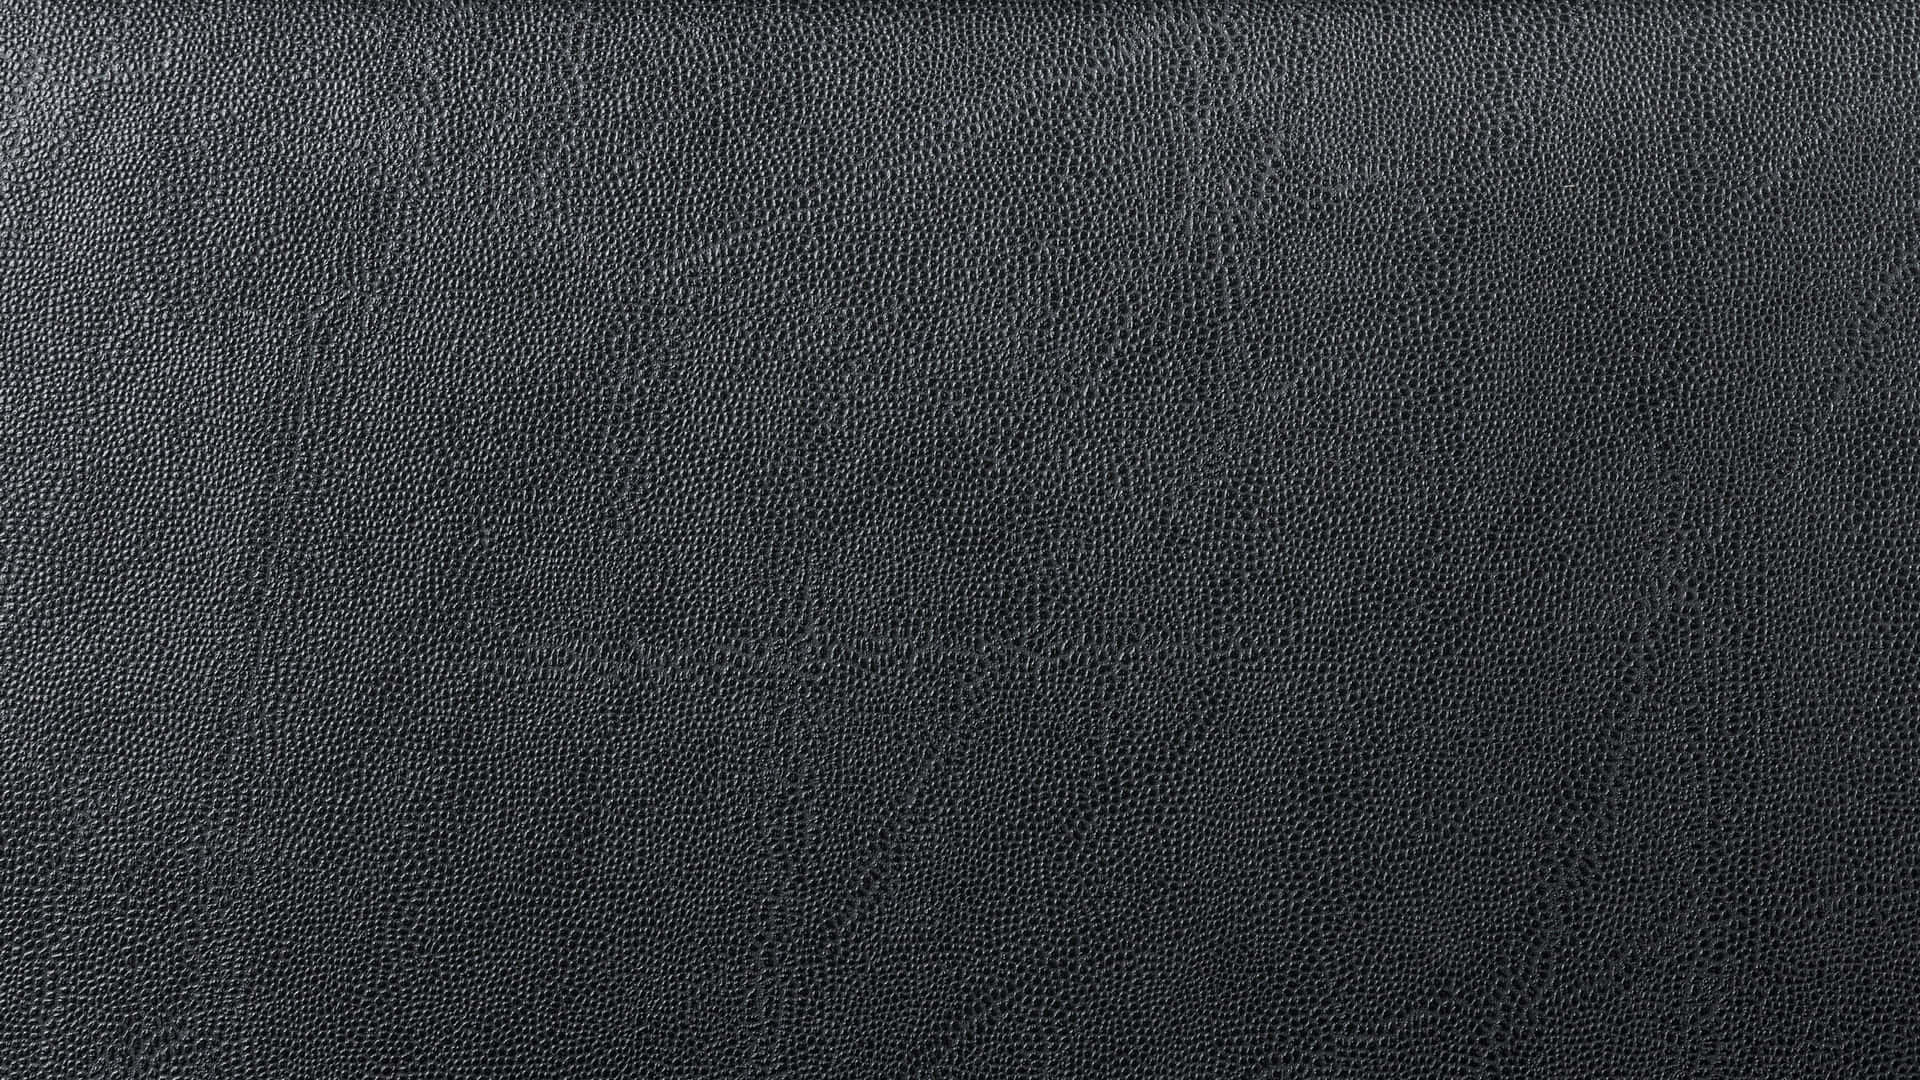 Læder Texture 2560 X 1440 Wallpaper